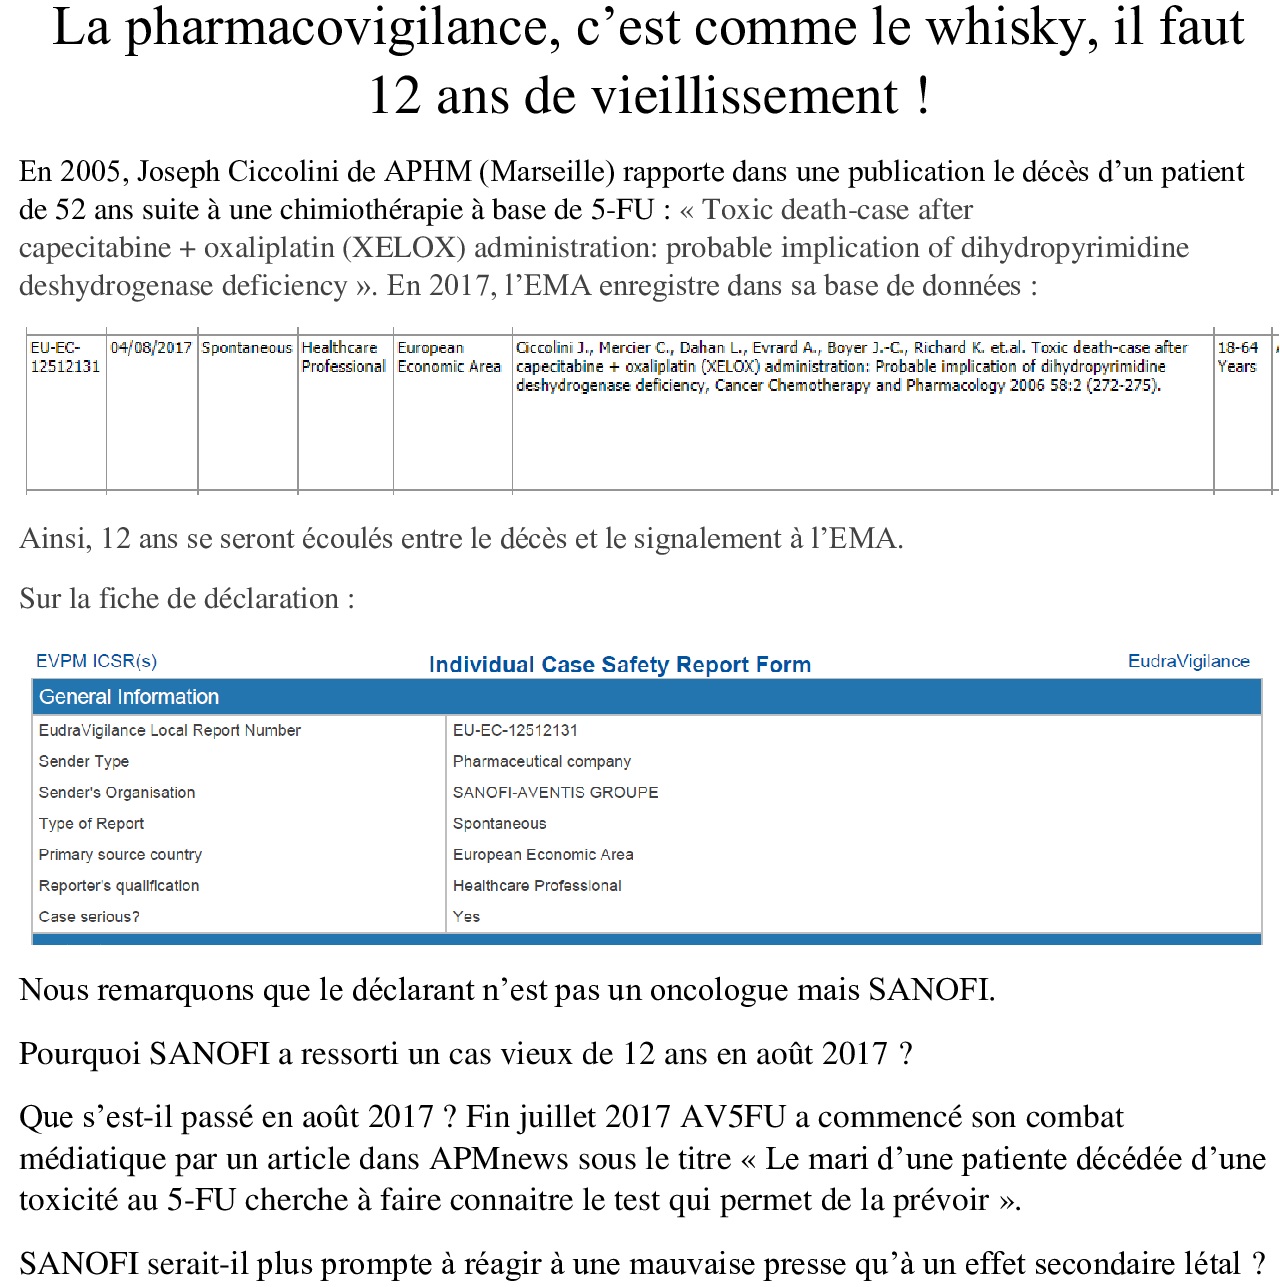 Pharmacovigilance-et-whisky